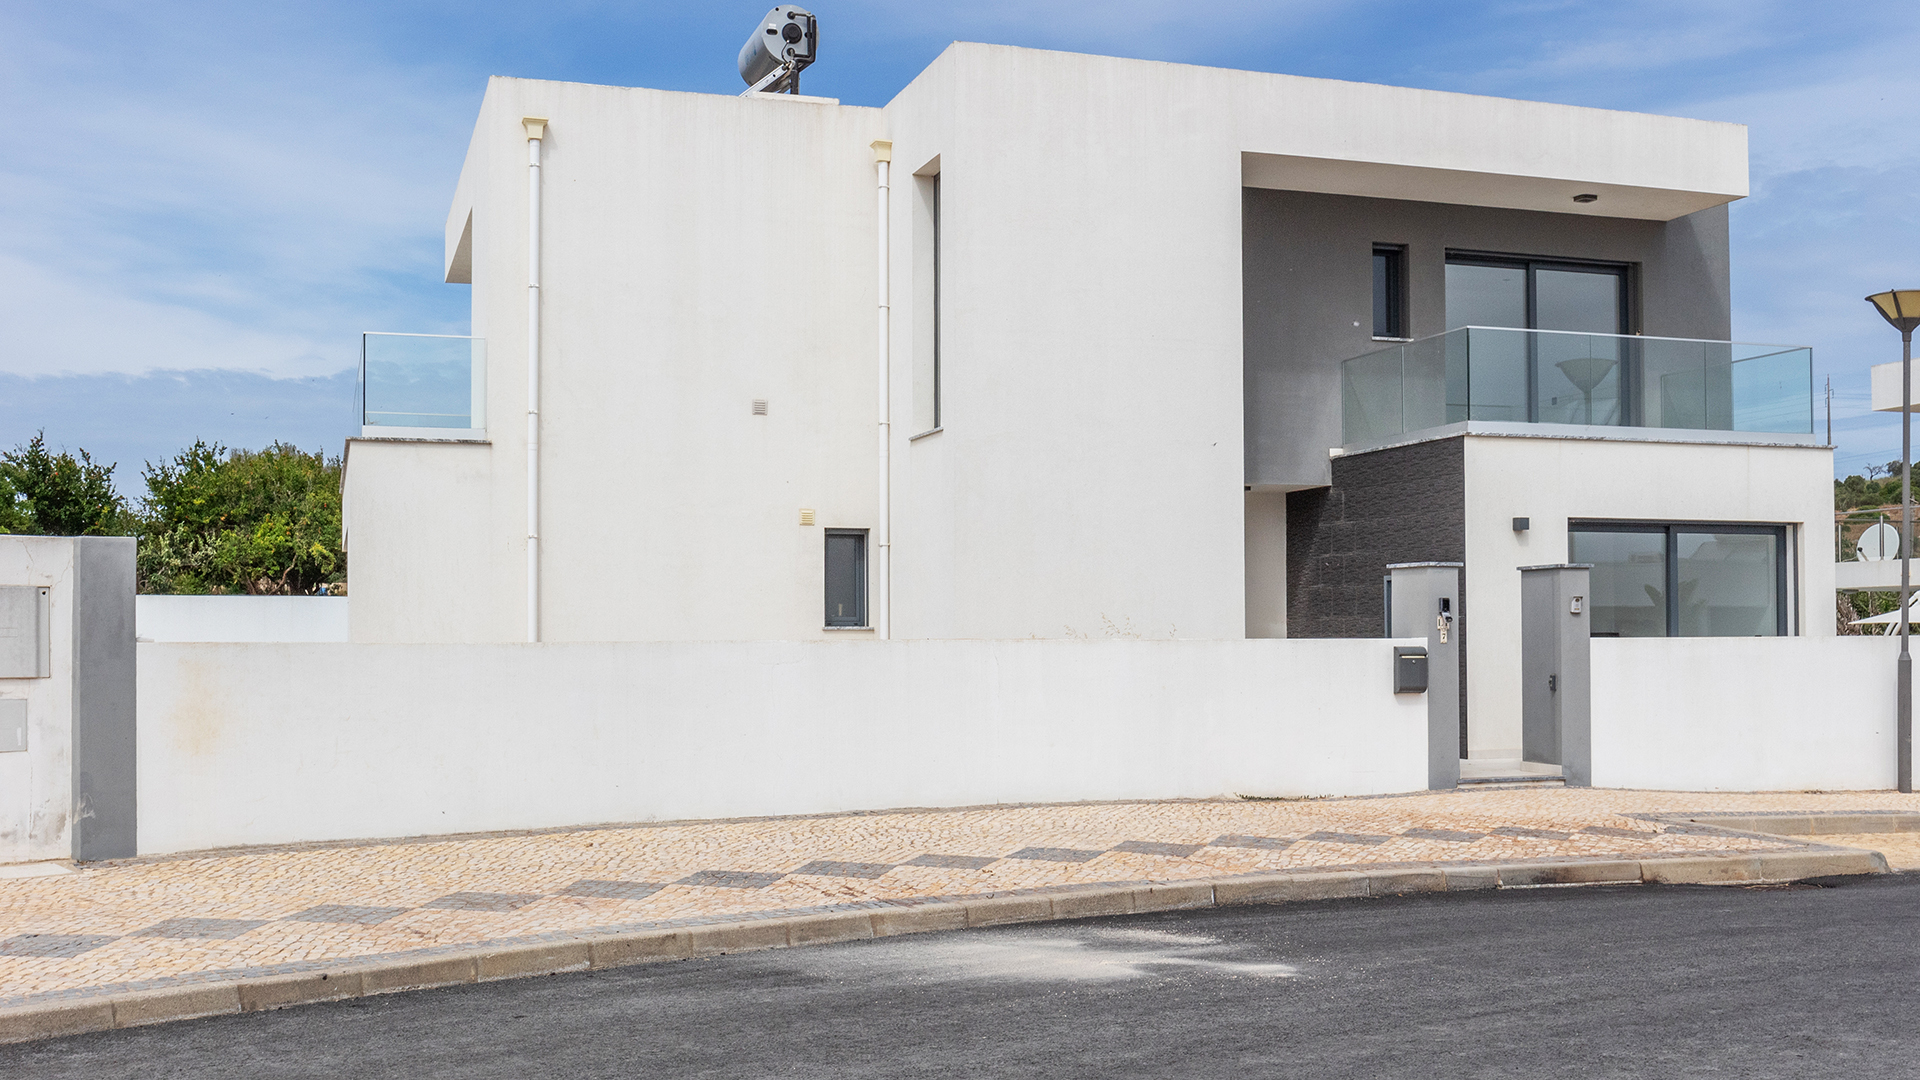 Sur plan, villas uniques de 4 chambres avec piscines privées, près de Lagos | LG2134 Ces villas individuelles de 3 + 1 chambres sur plan ont des piscines conçues individuellement et sont situées dans un charmant village juste à la périphérie de Lagos. L'emplacement offre une vue magnifique sur la Serra da Monchique et la campagne et se trouve à quelques minutes des plages locales de l'Algarve. Les maisons sont conçues, construites et finies avec des installations et des matériaux de luxe et offrent un excellent potentiel de location pour un investissement ou comme résidence permanente.